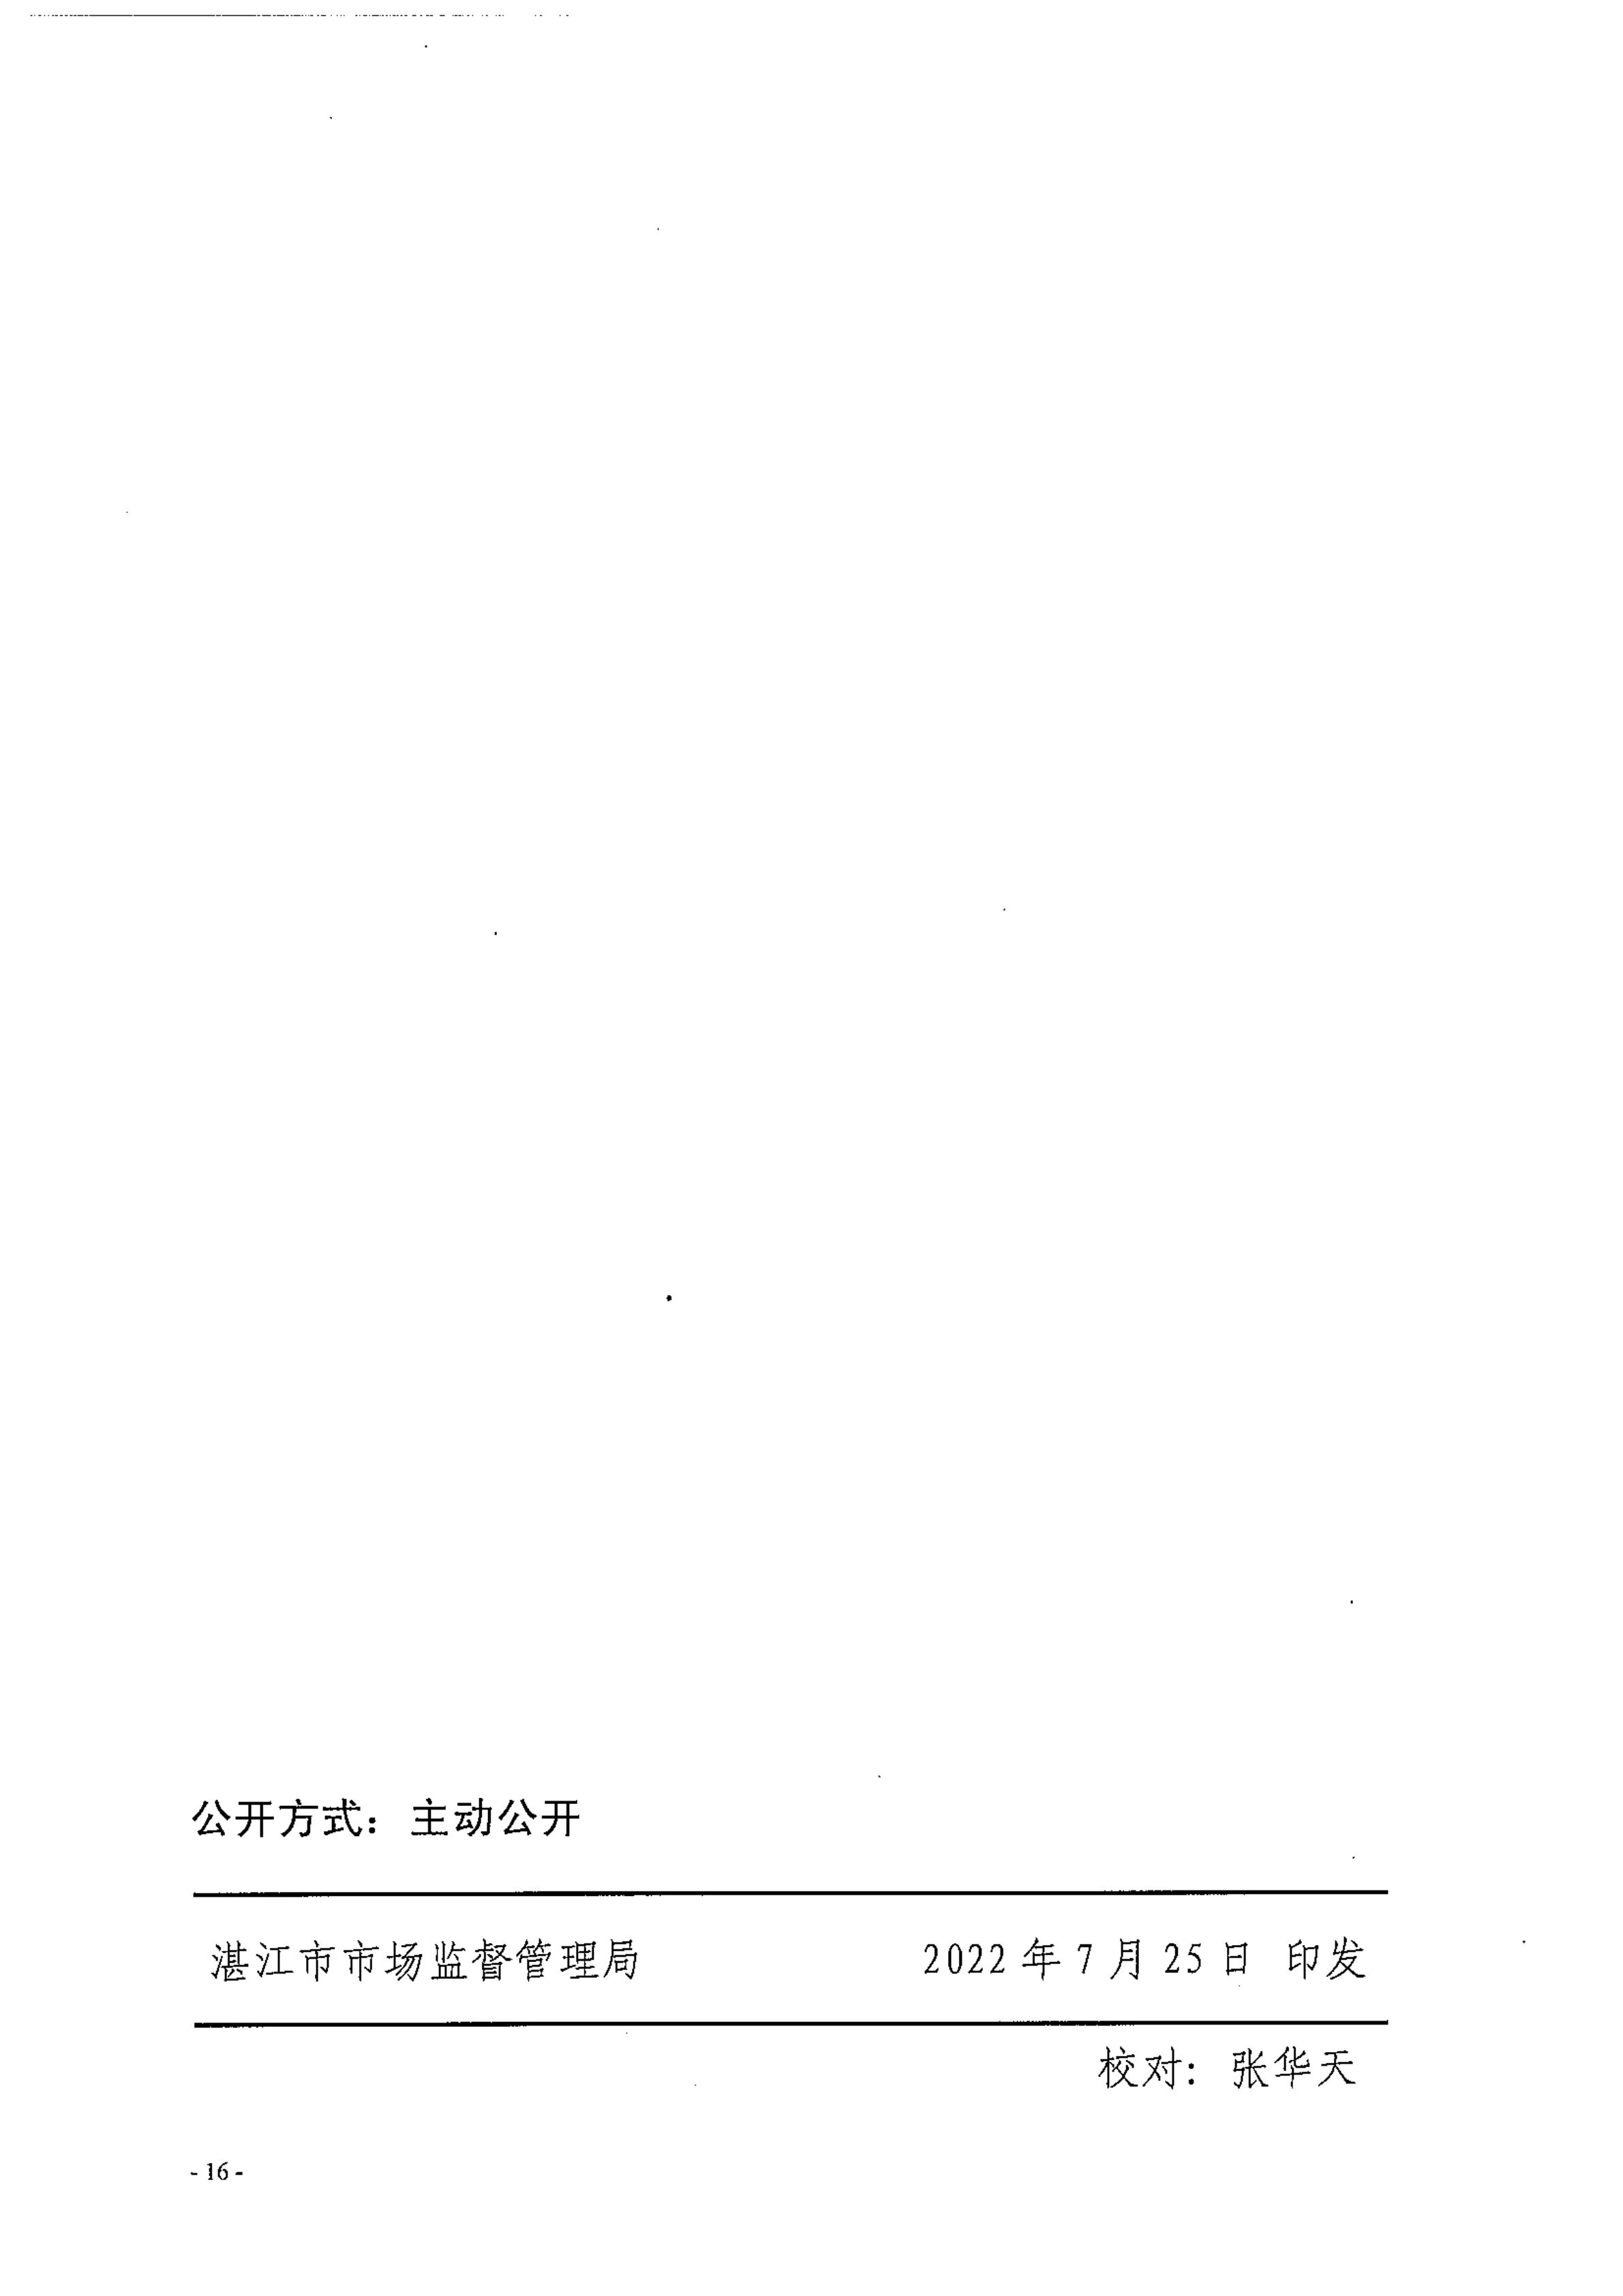 湛江市市场监督管理局湛江市财政局关于印发修改《湛江市实施标准化战略专项资金管理办法》（湛部规2021-24）标题的通知_15.jpg